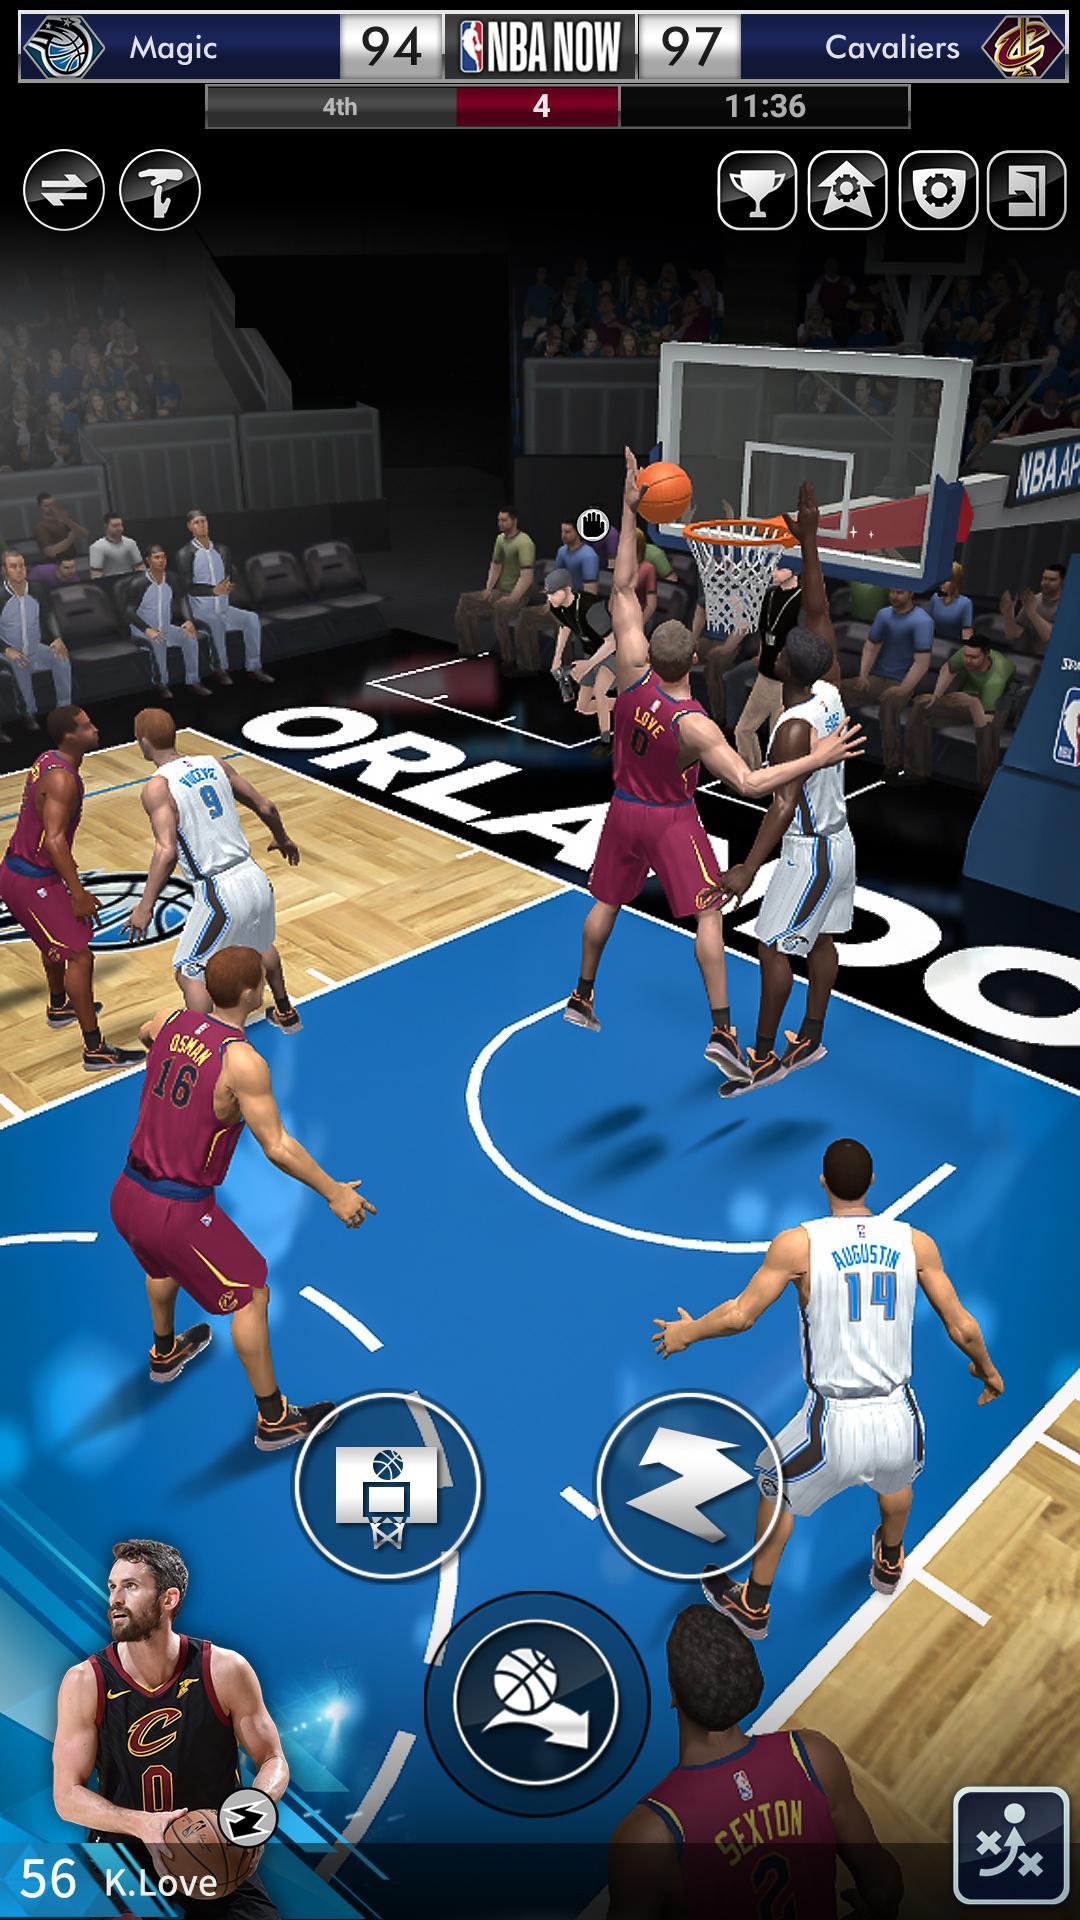 NBA NOW Mobile Basketball Game 1.5.4 Screenshot 11